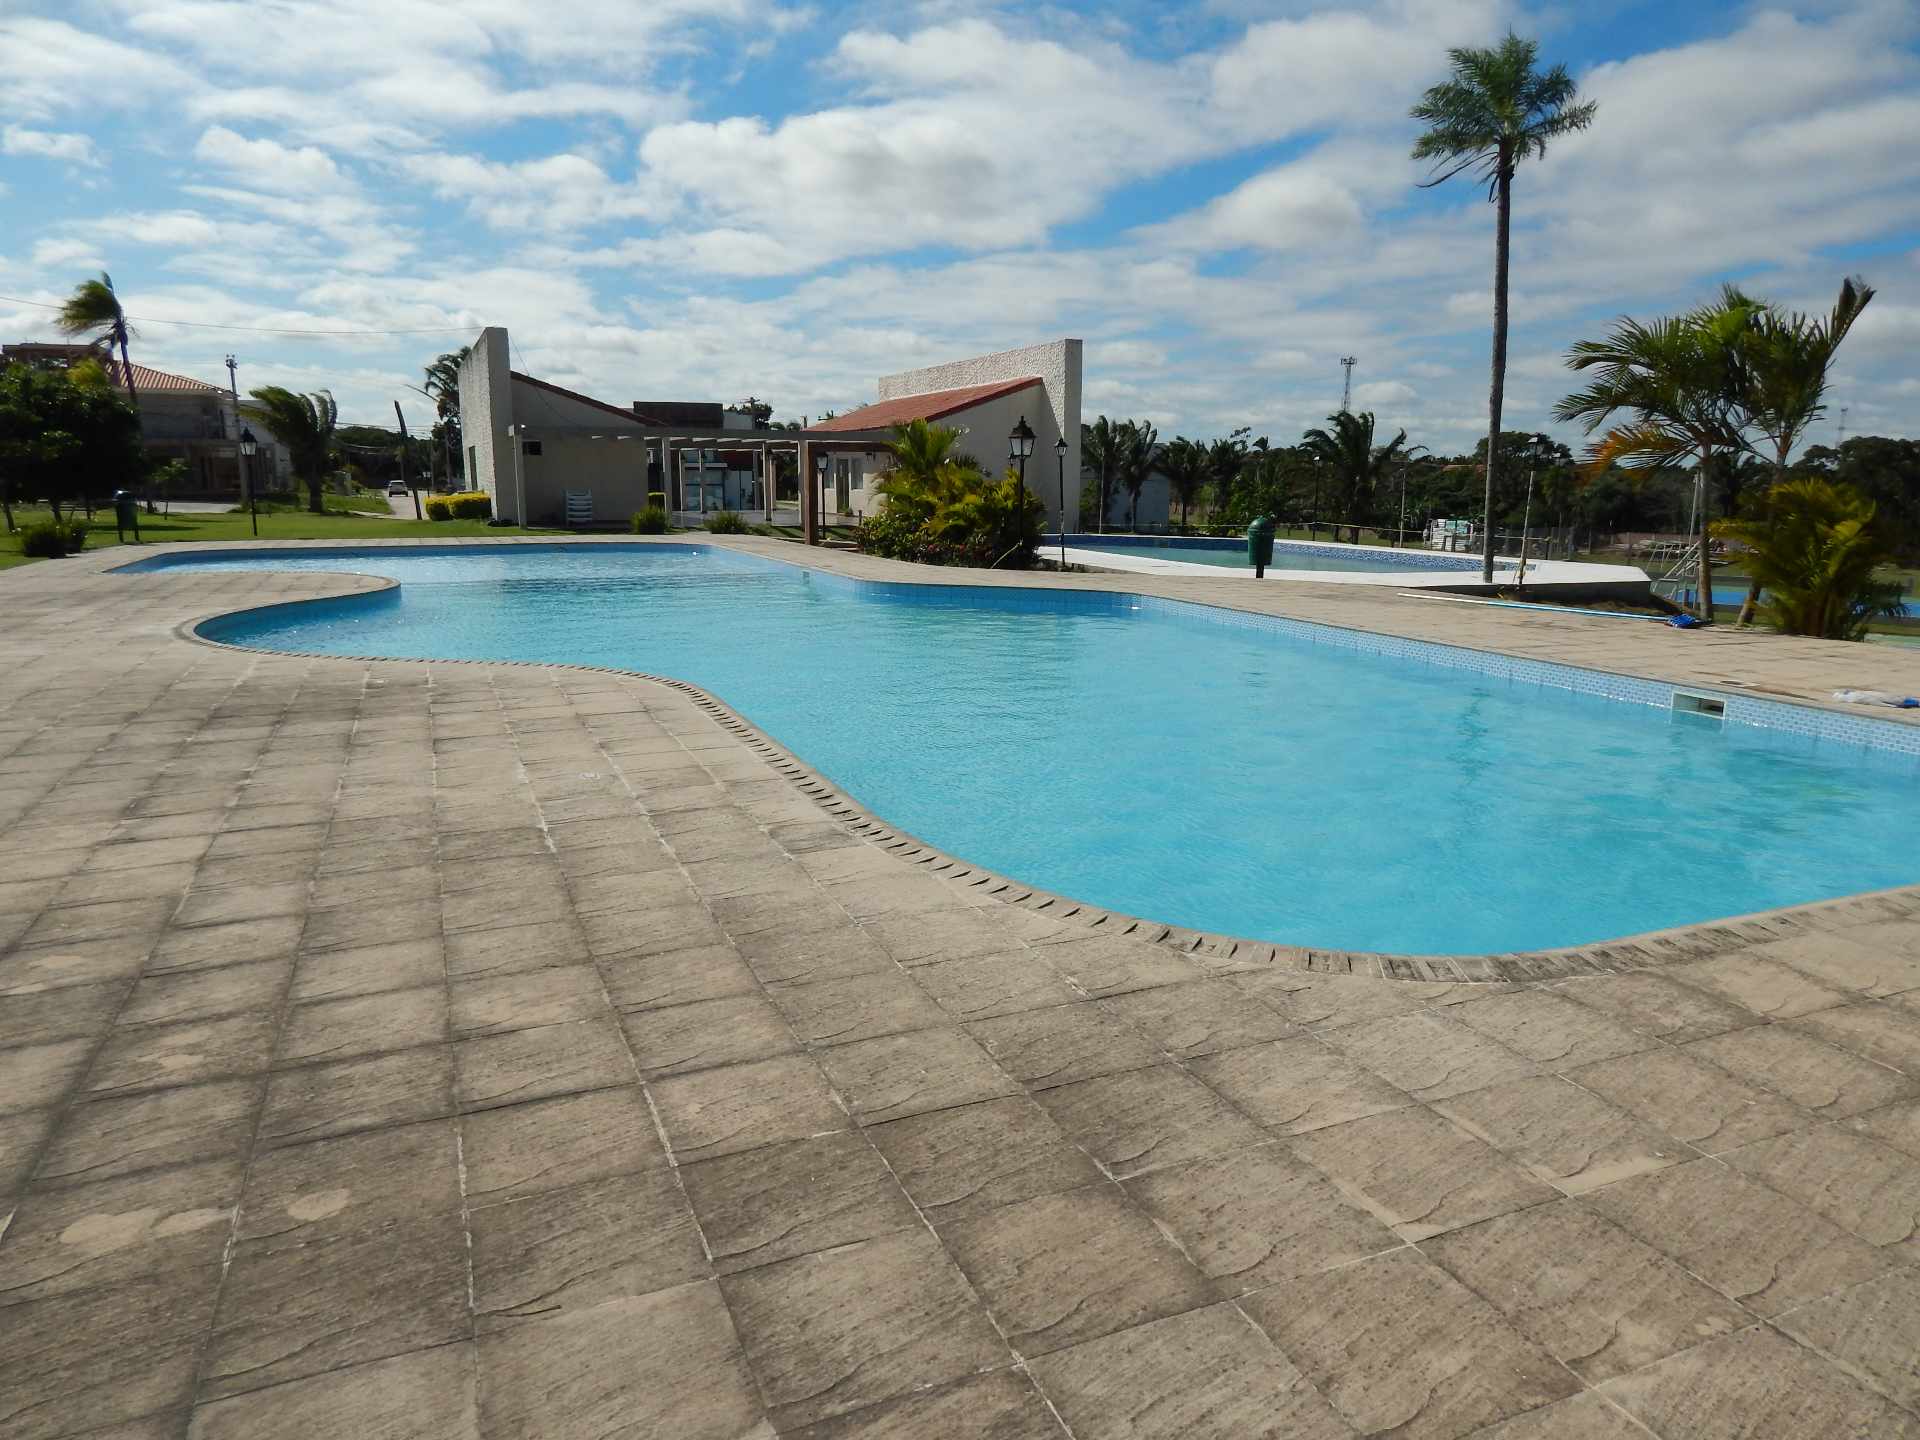 Casa en AlquilerCasa con piscina propia  en alquiler en el Urubo  Foto 8